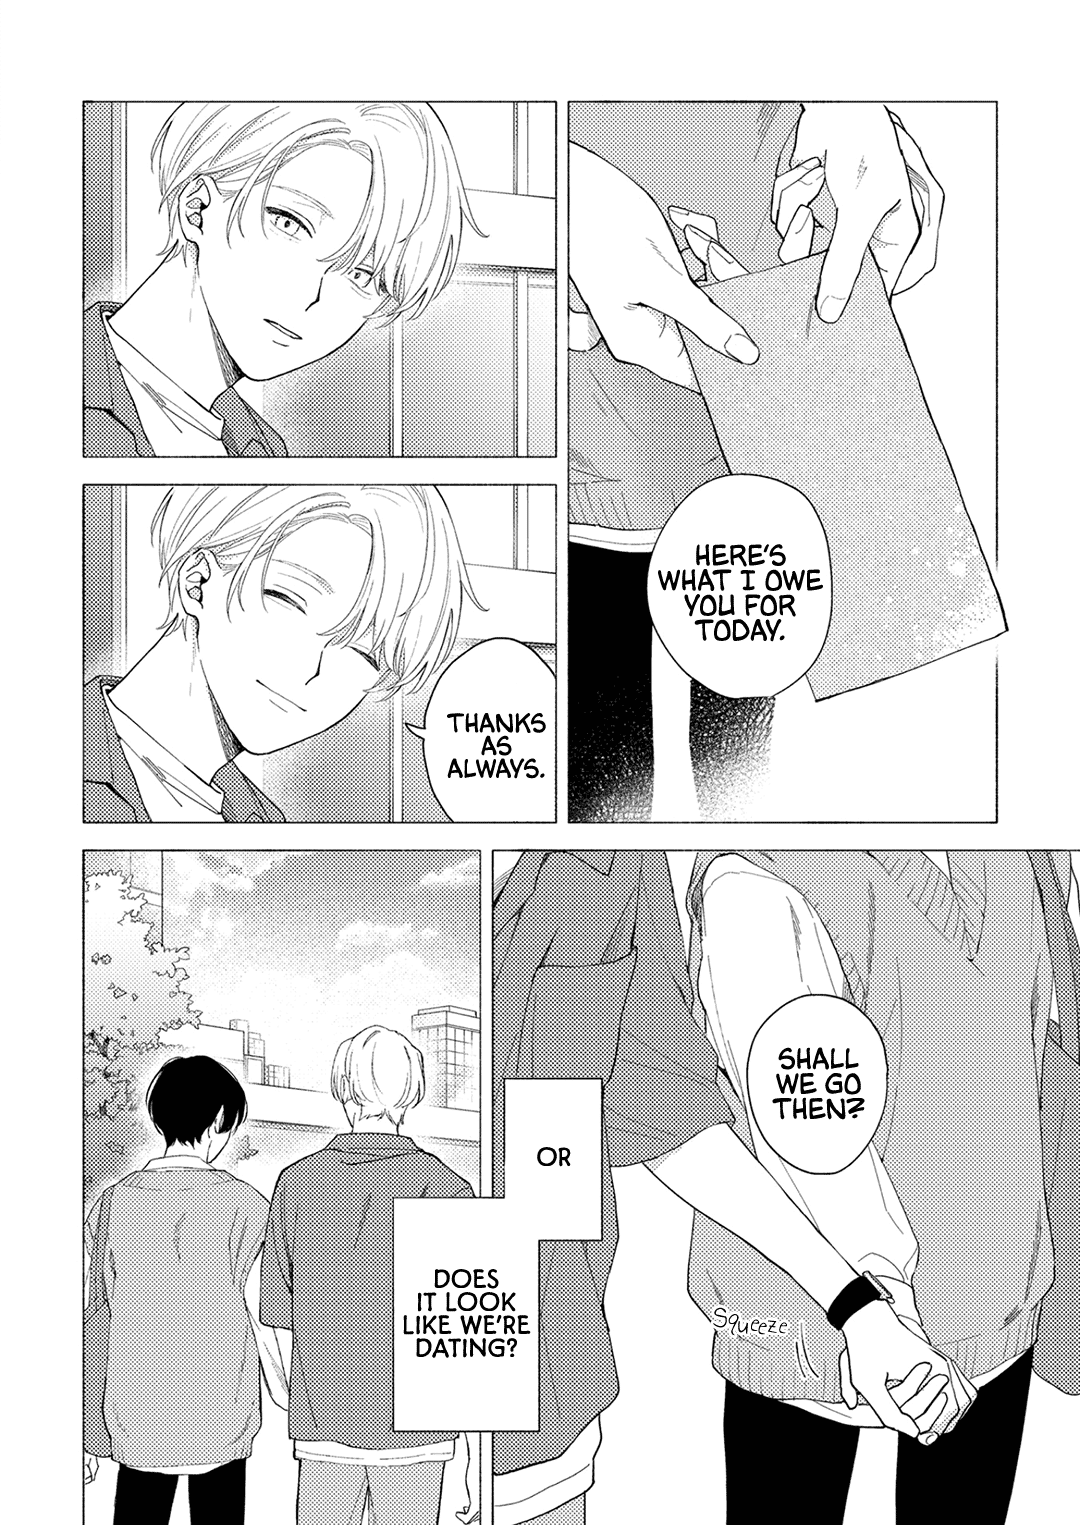 Kyou, Sukitte Iimasu - 1 page 10-742e4a36